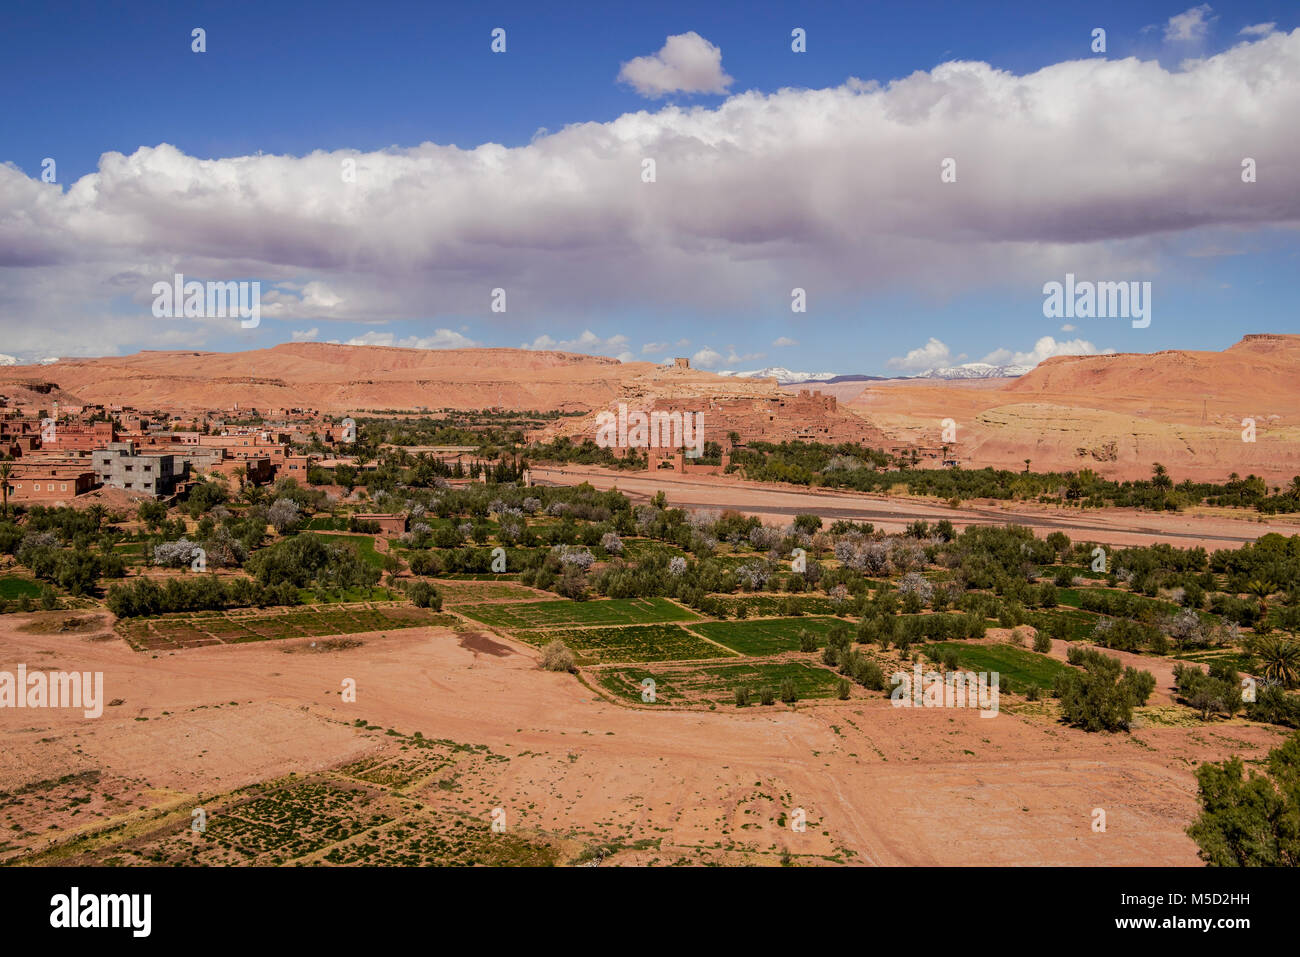 Antica città di Ait Benhaddou situata lungo l'antica via carovana tra il Sahara e Marrakech, nell'attuale Marocco. Foto Stock